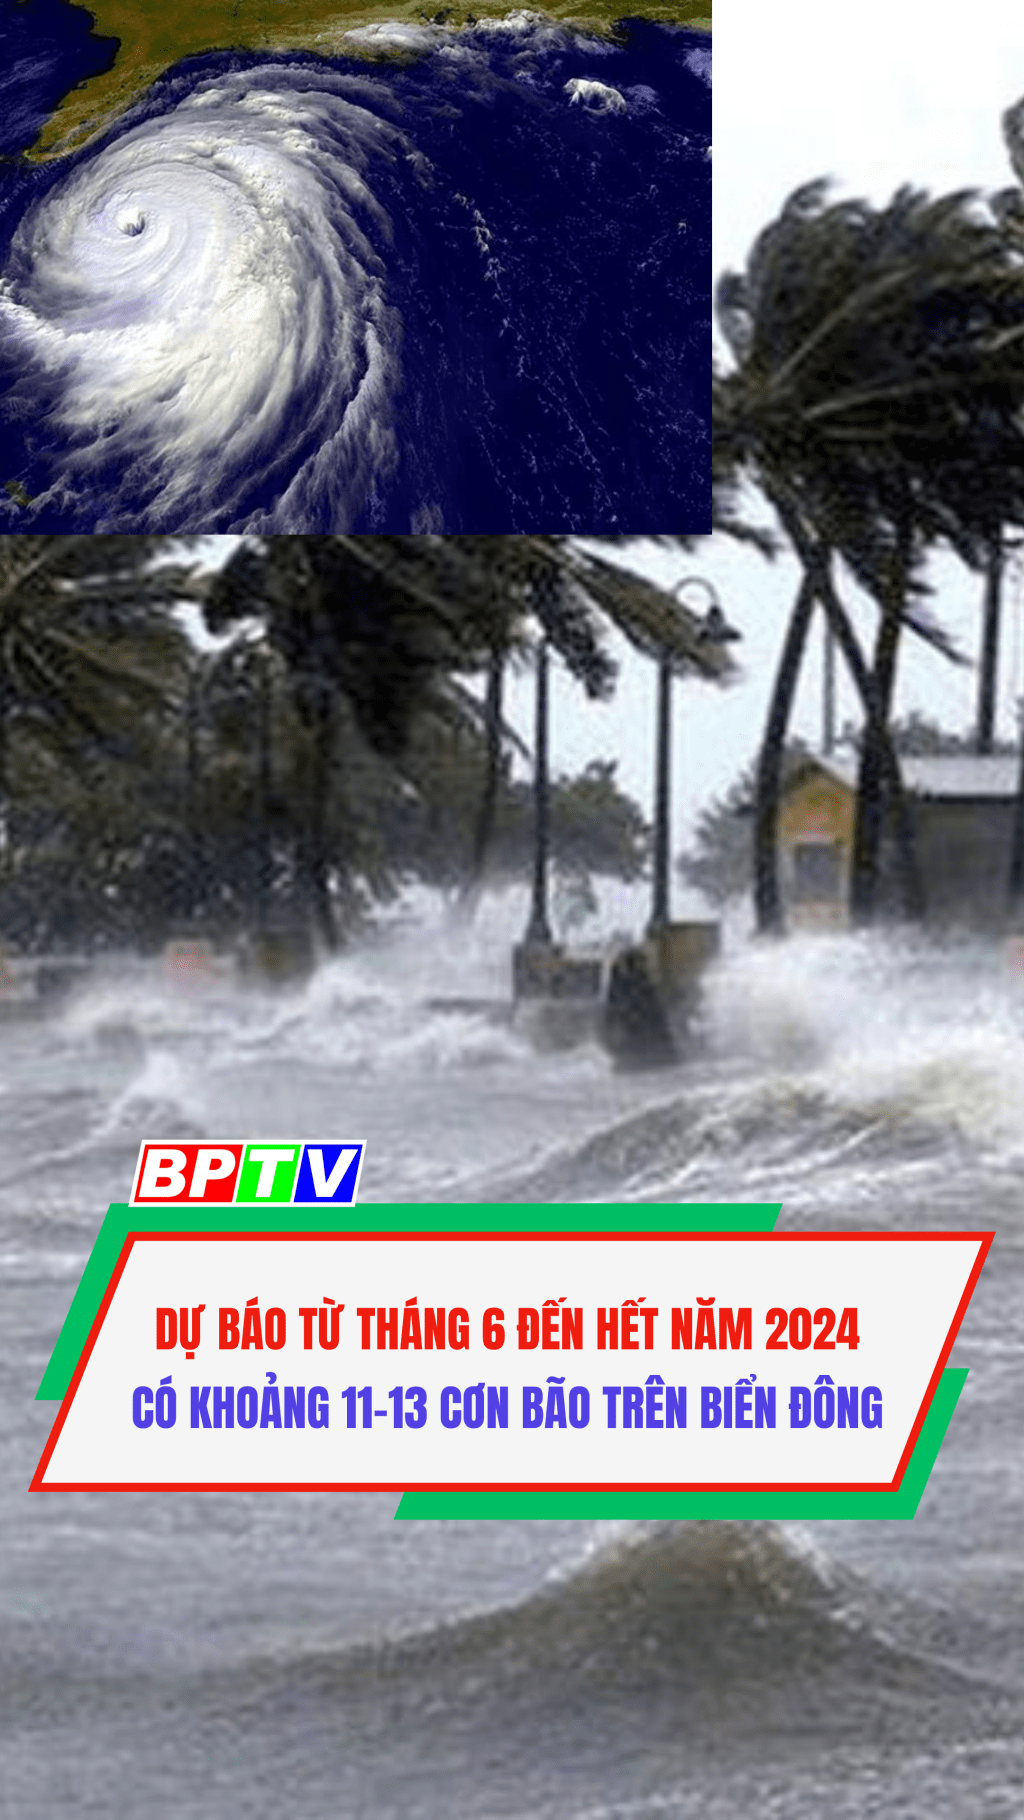 Dự báo từ tháng 6 đến hết năm 2024 có khoảng 11-13 cơn bão trên biển Đông #shorts